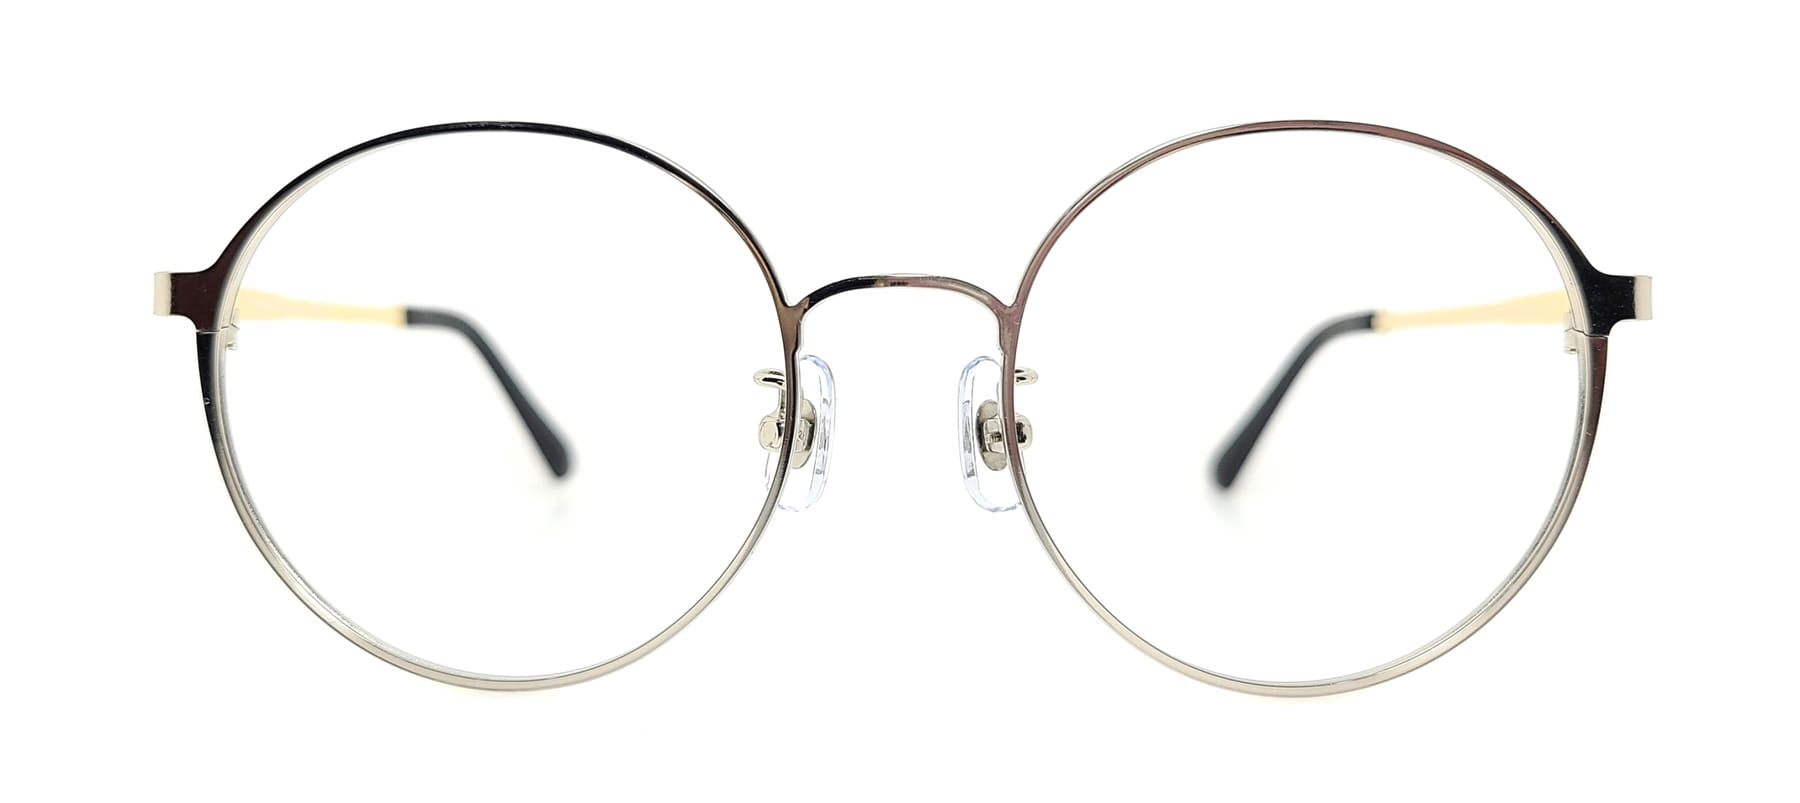 WITHUS-7452, Korean glasses, sunglasses, eyeglasses, glasses